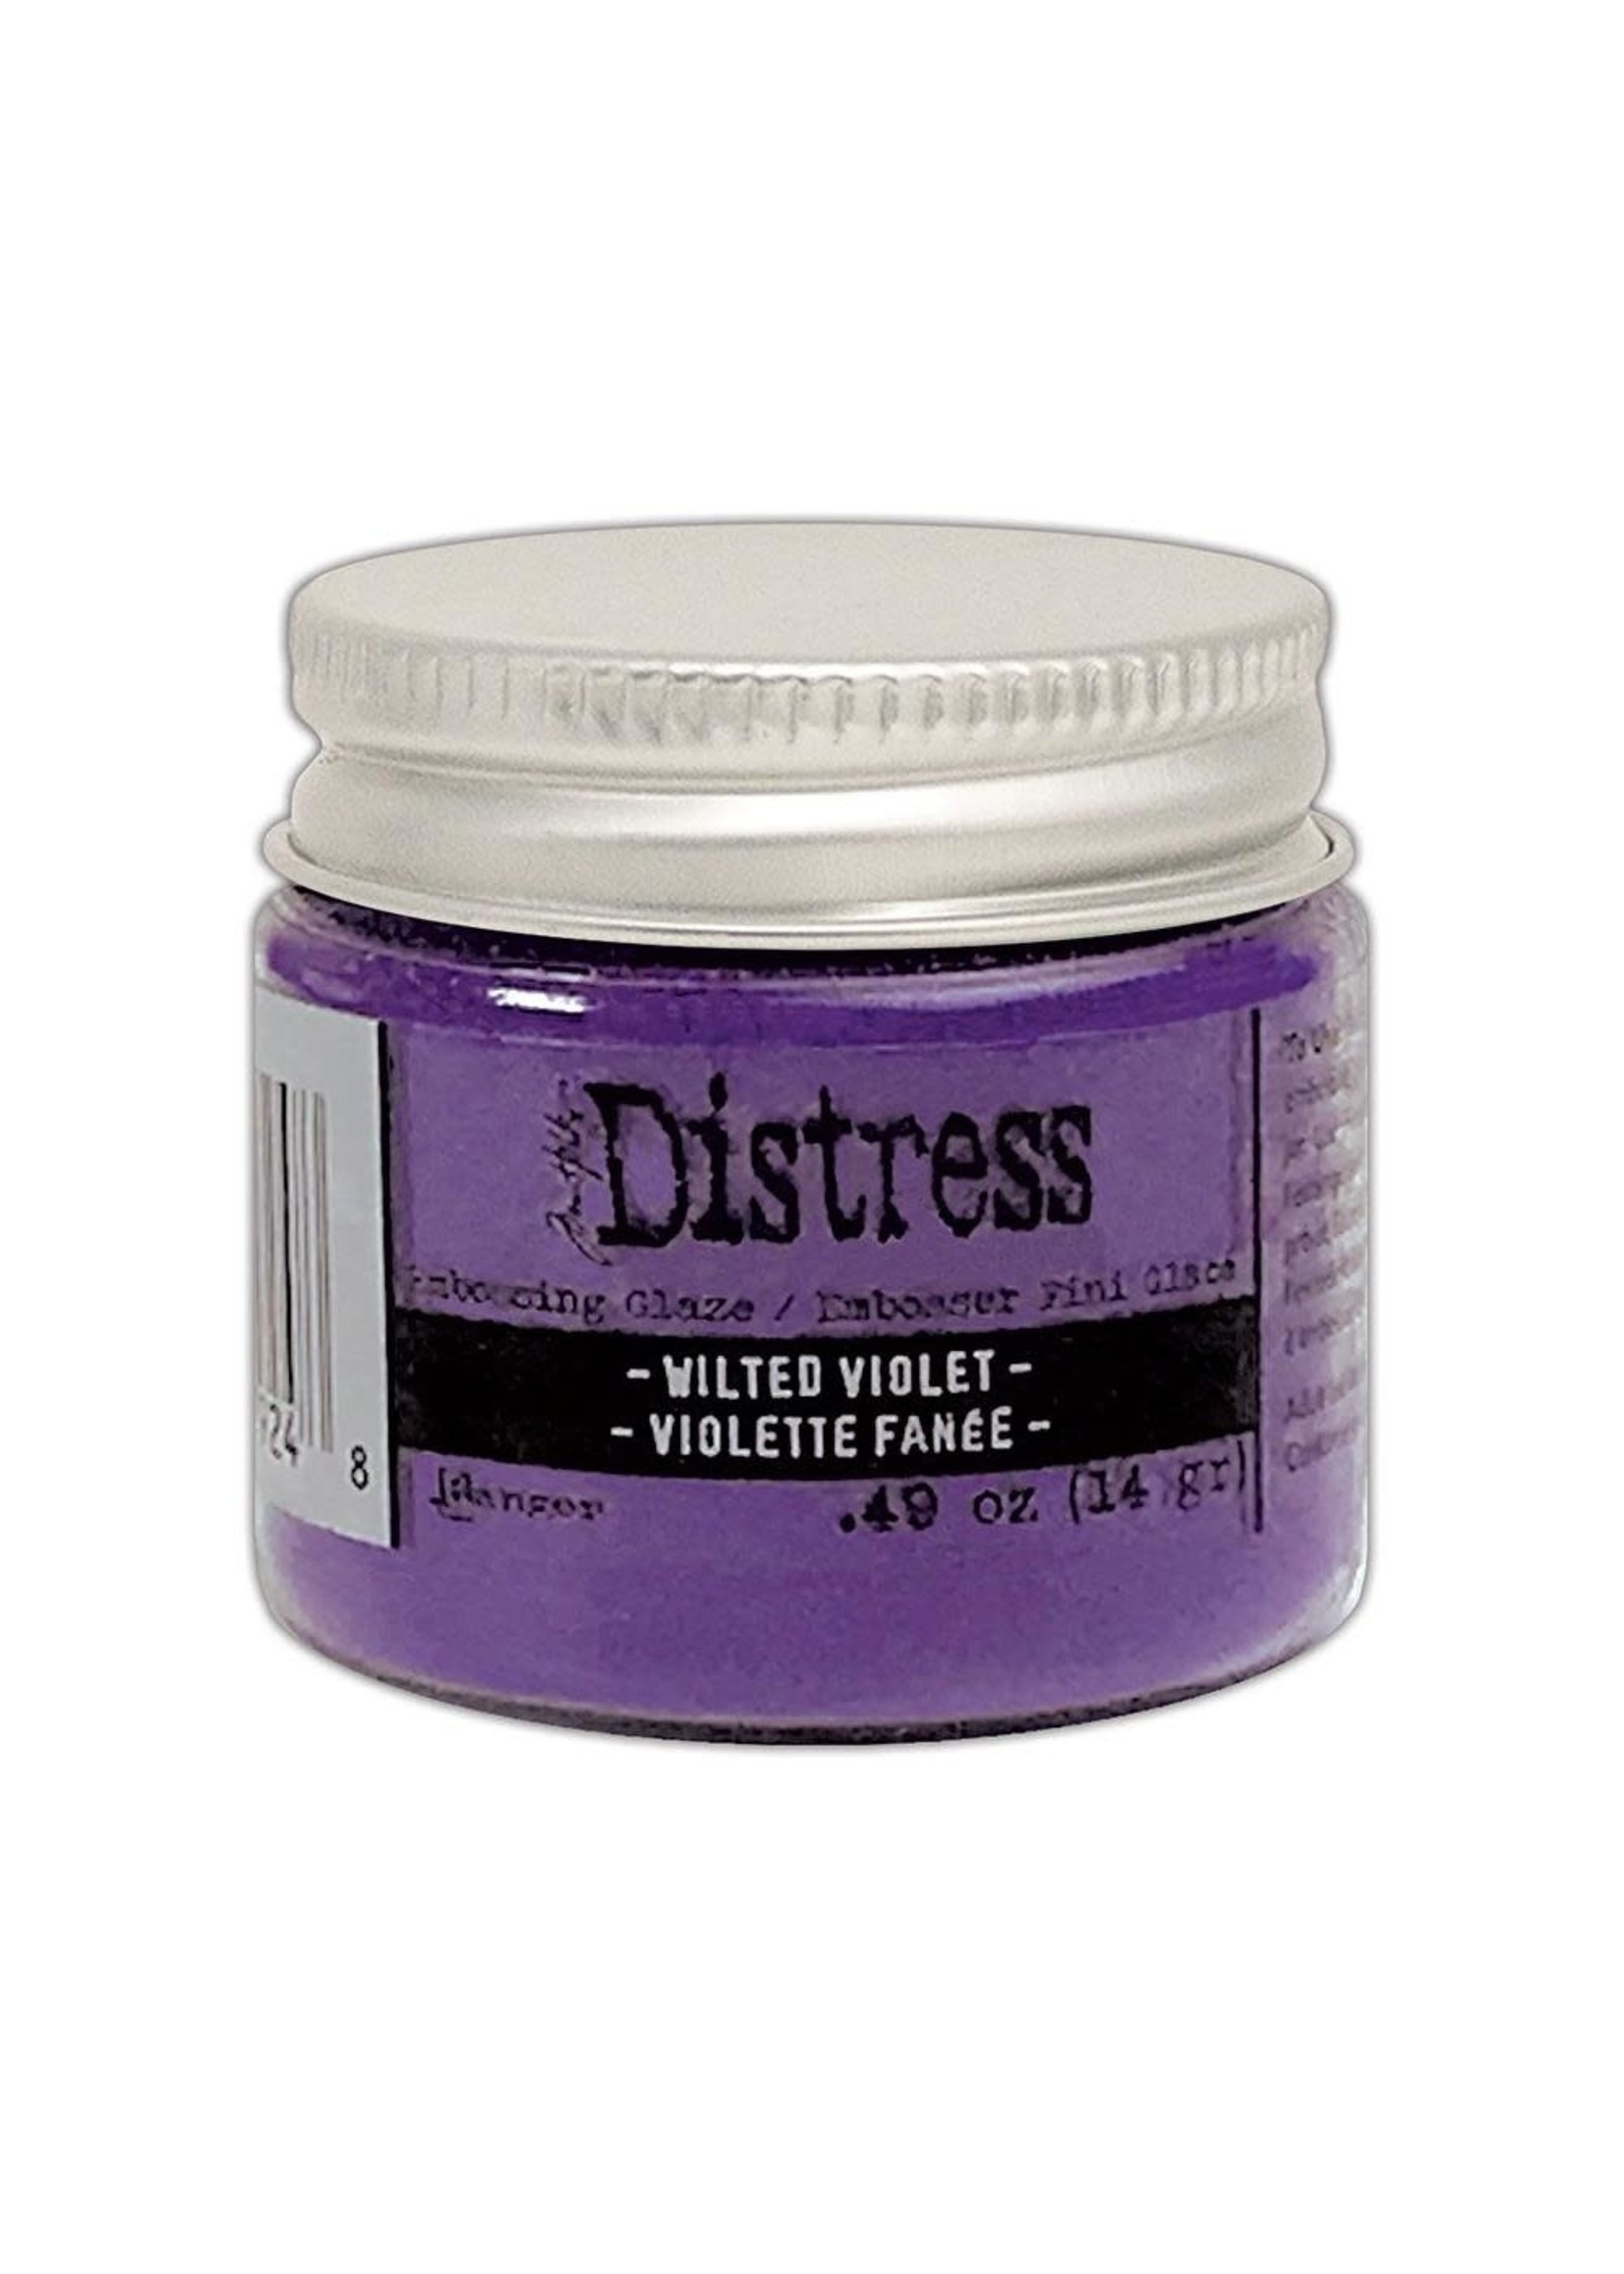 RANGER Distress Embossing Glaze: Wilted Violet